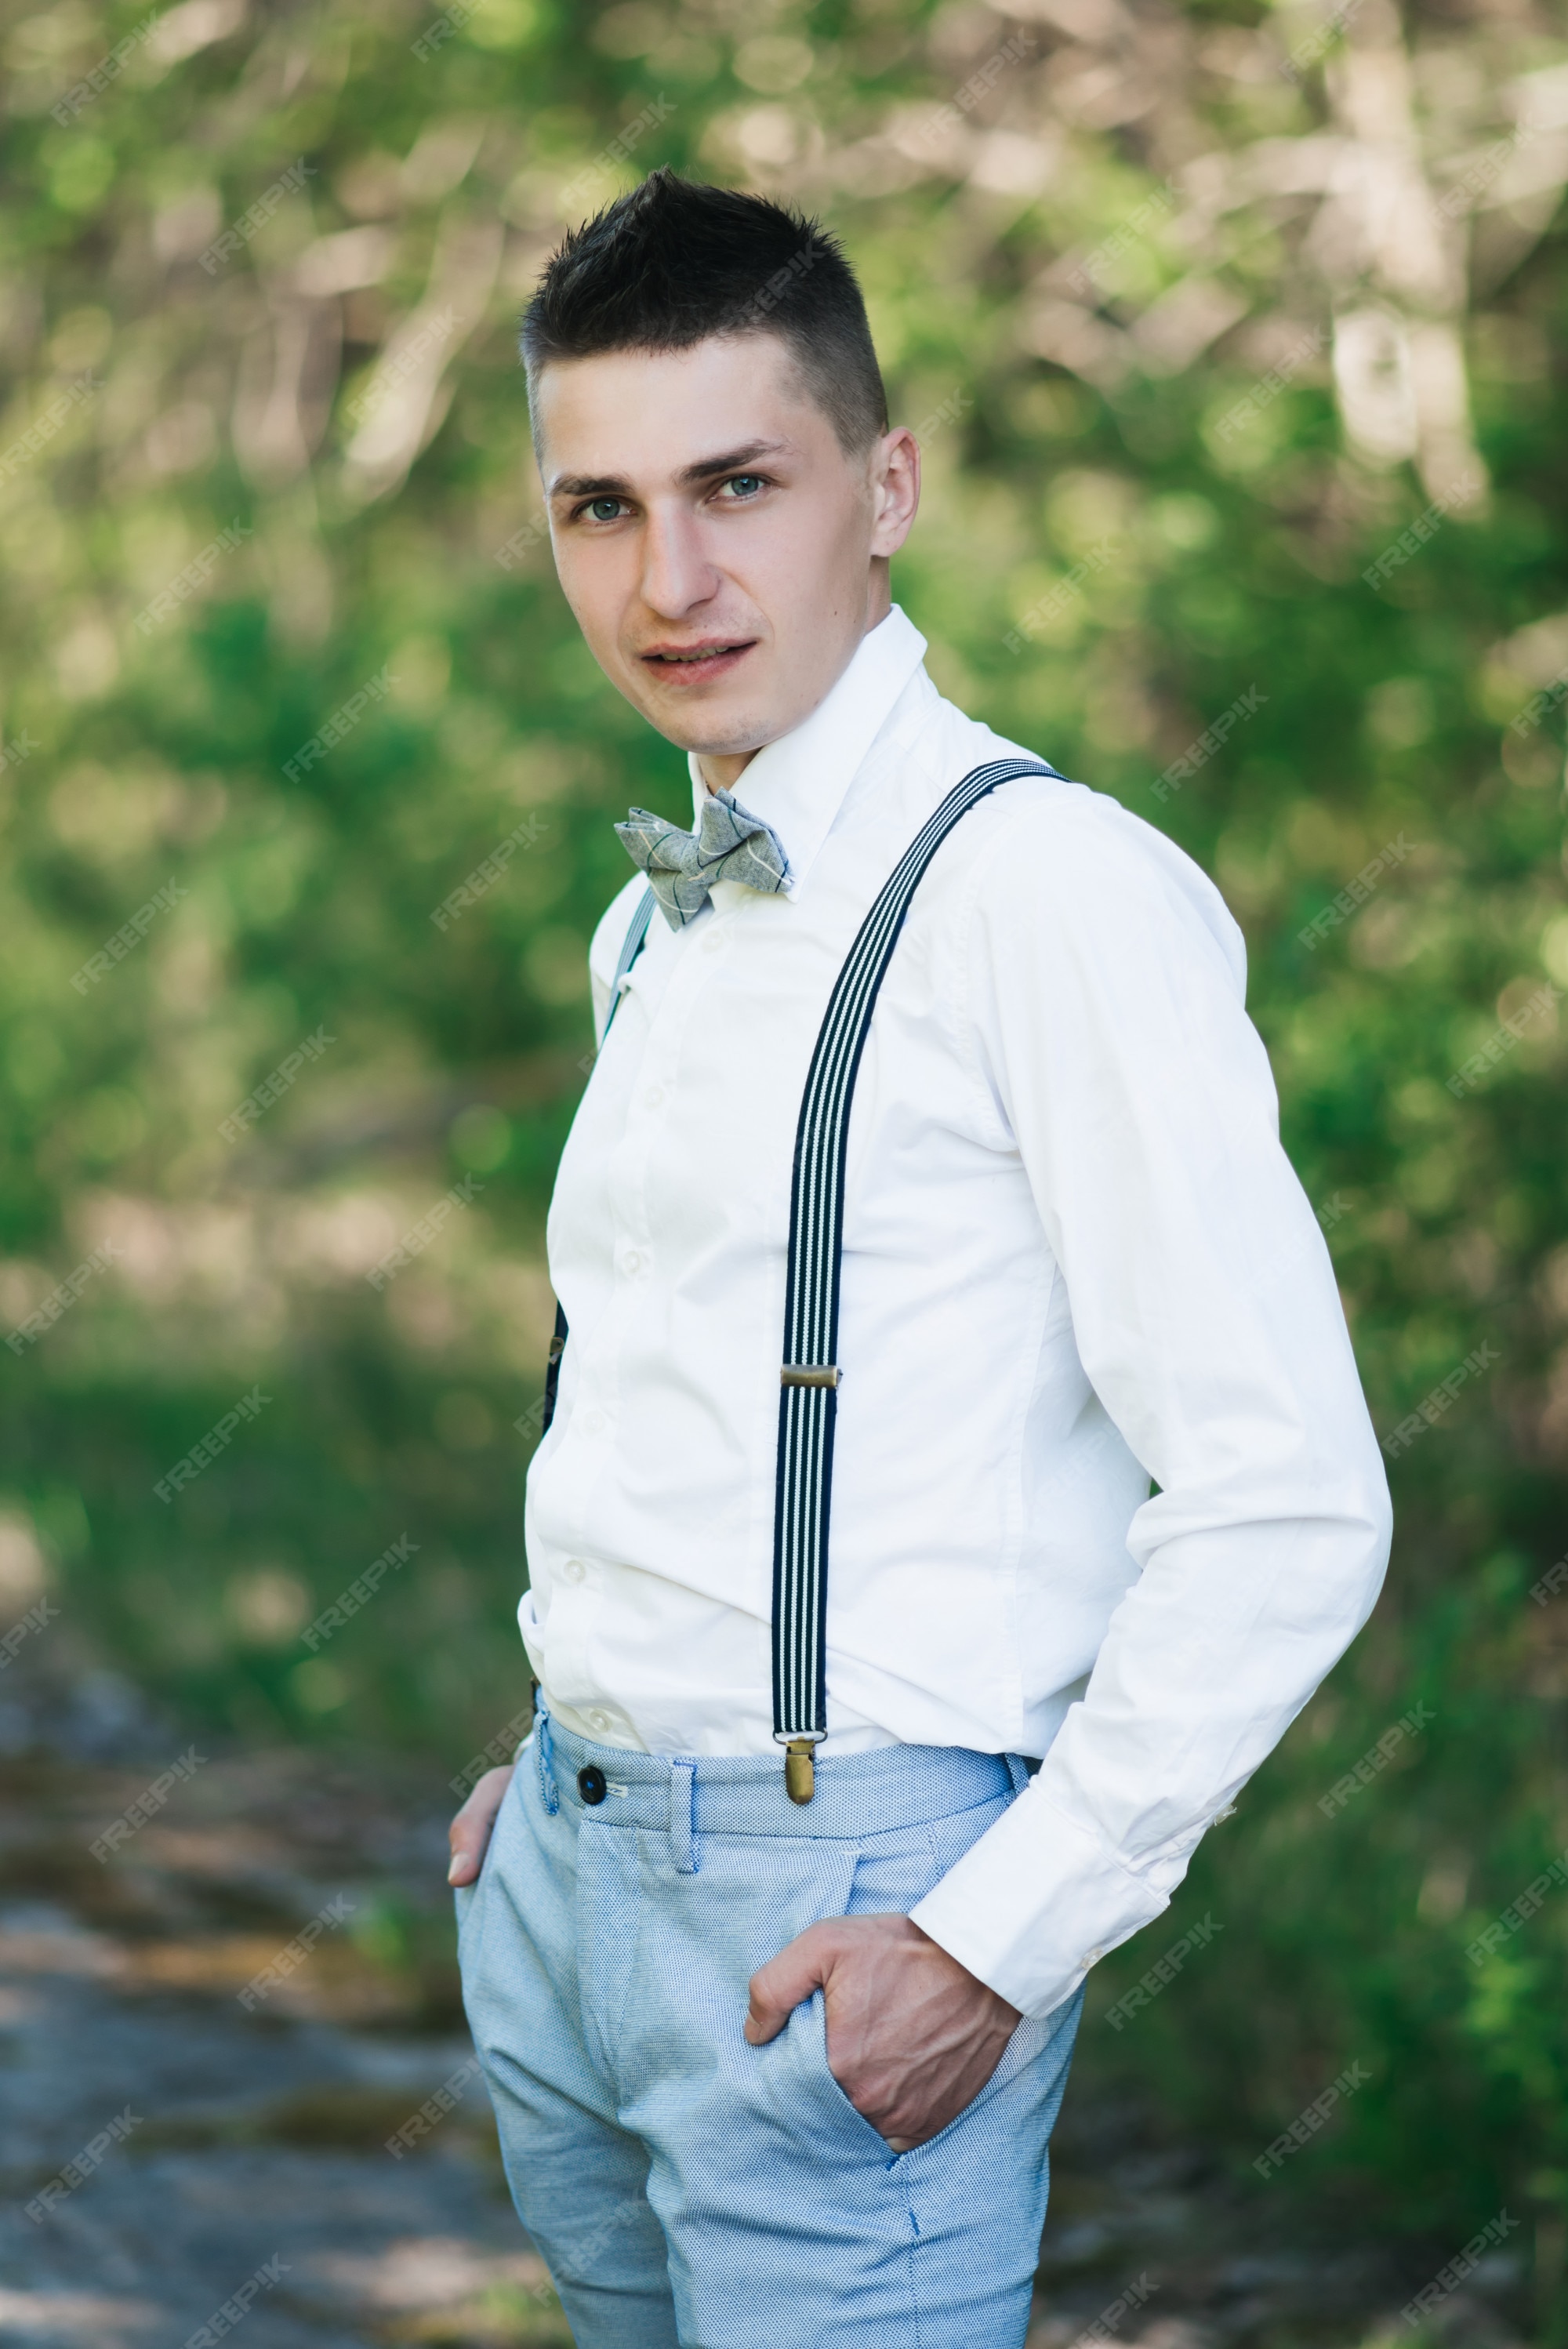 candidato éxito Huérfano Novio elegante con camisa blanca, pantalón azul, pajarita y tirantes. |  Foto Premium